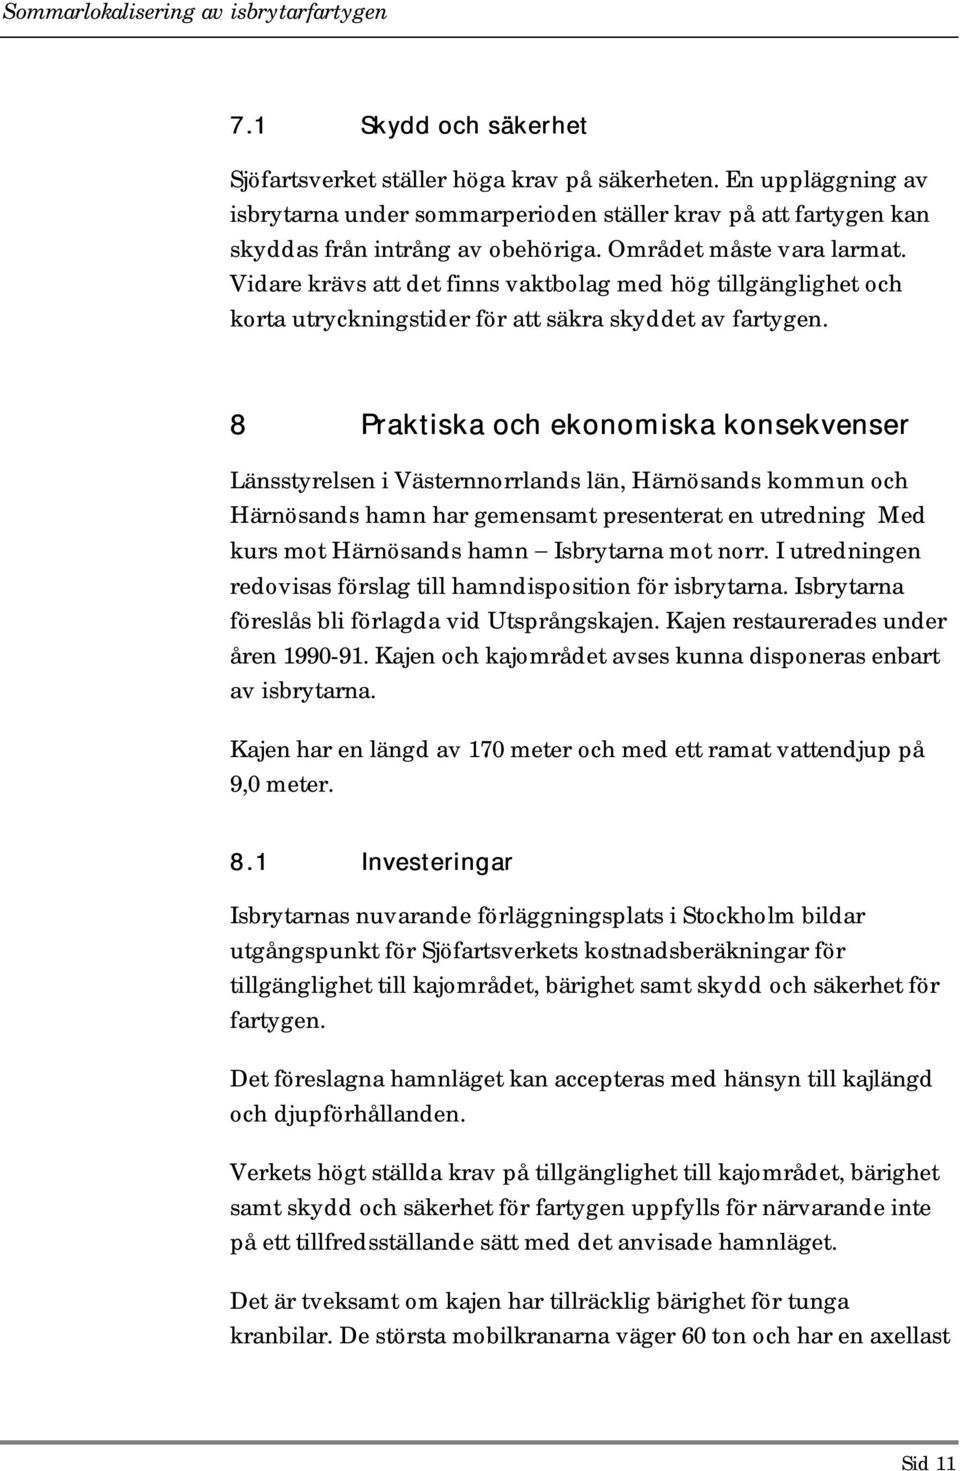 8 Praktiska och ekonomiska konsekvenser Länsstyrelsen i Västernnorrlands län, Härnösands kommun och Härnösands hamn har gemensamt presenterat en utredning Med kurs mot Härnösands hamn Isbrytarna mot